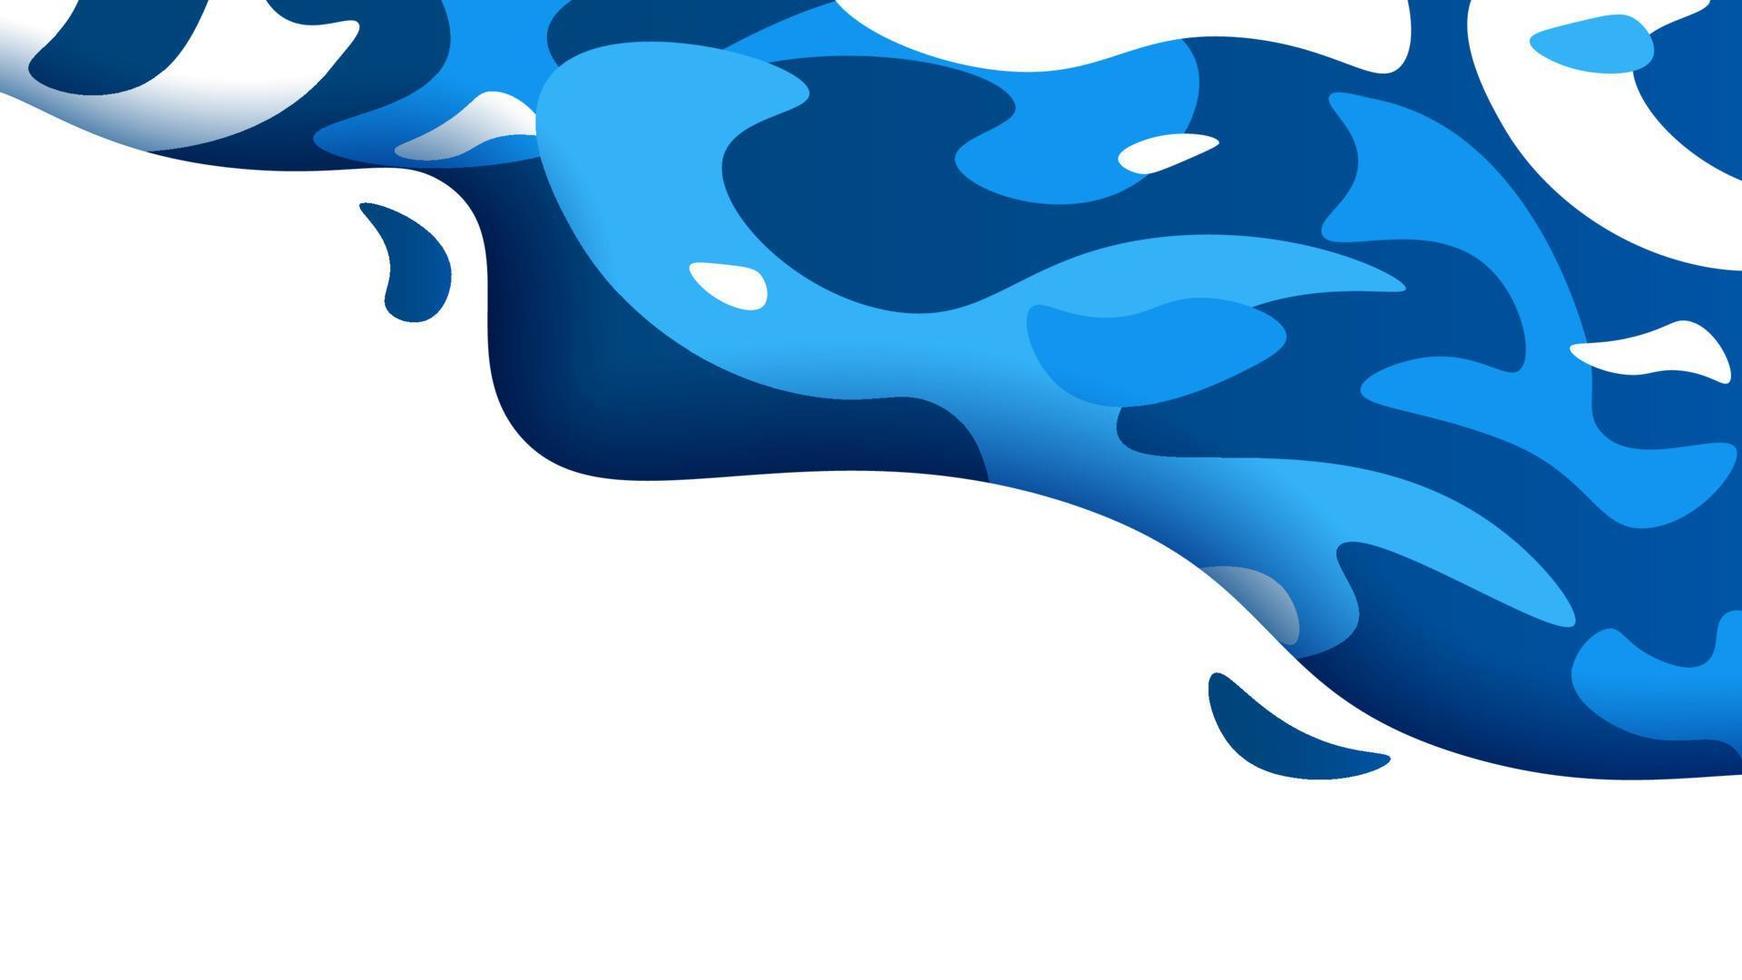 fluxo de onda azul futurista gradiente isolado no fundo branco. azul colorido, acenando, salpicos de líquido, manchas abstratas de água ou lagoa cenário gráfico ilustração vetorial vetor